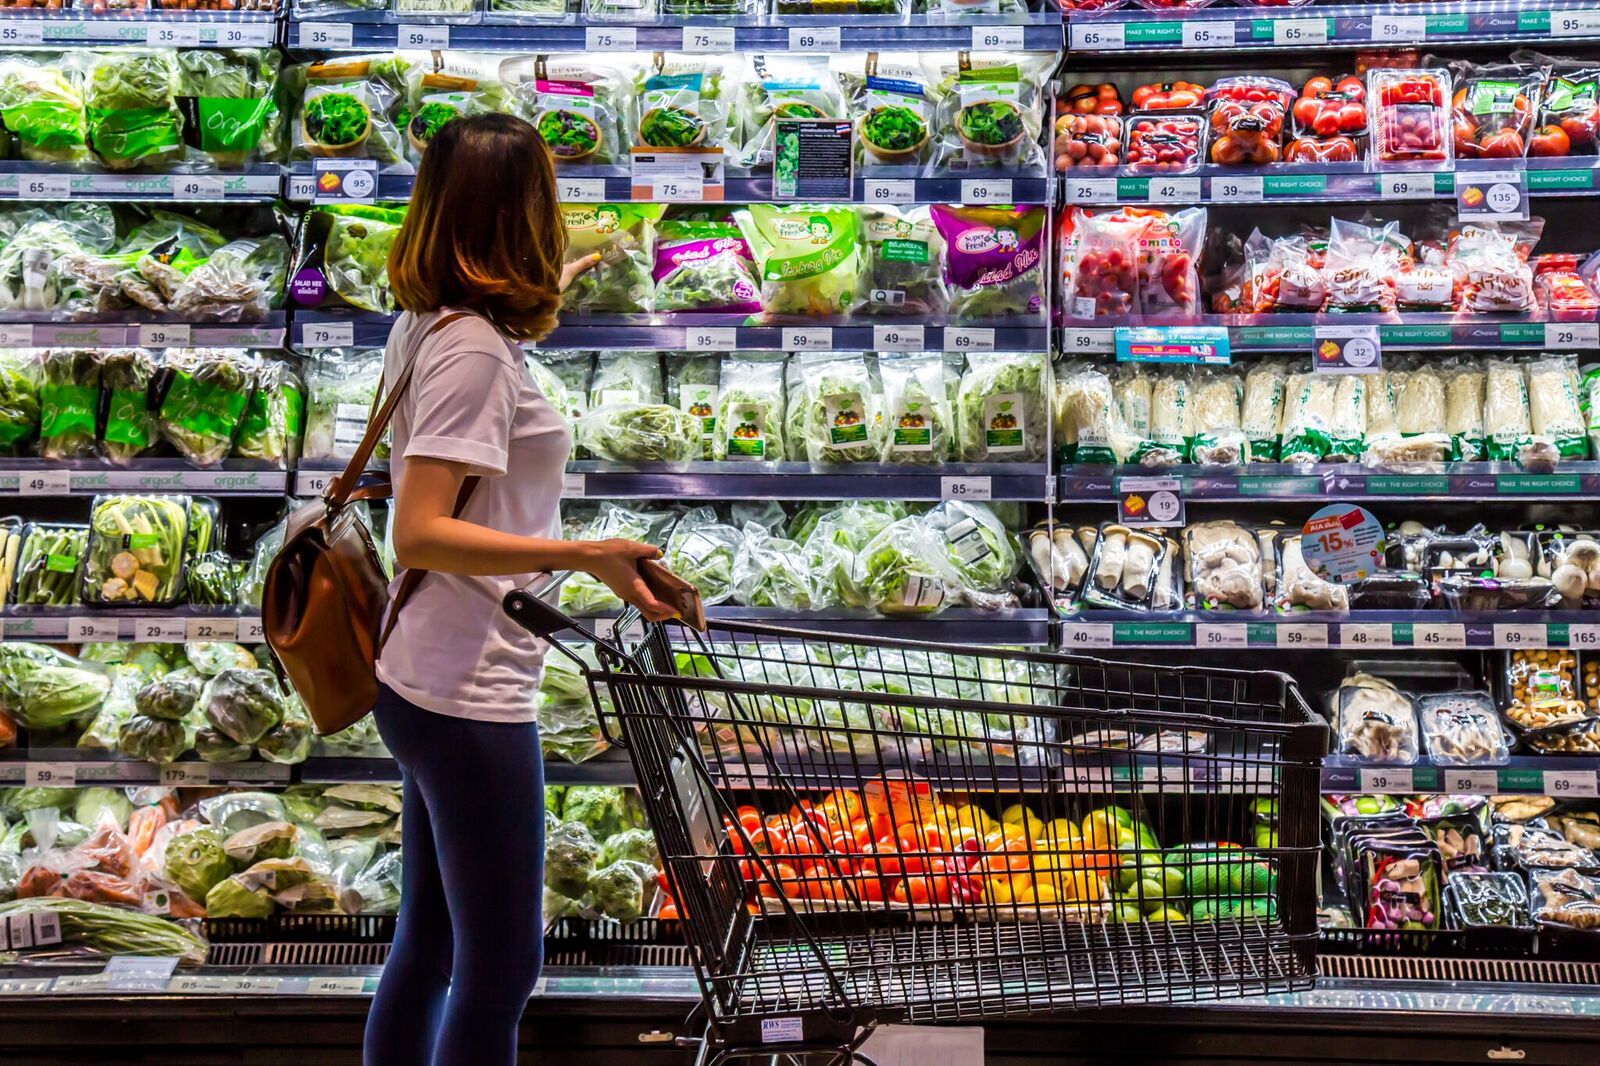 Mujer inspecciona verduras en supermercado. Fuente: Shutterstock